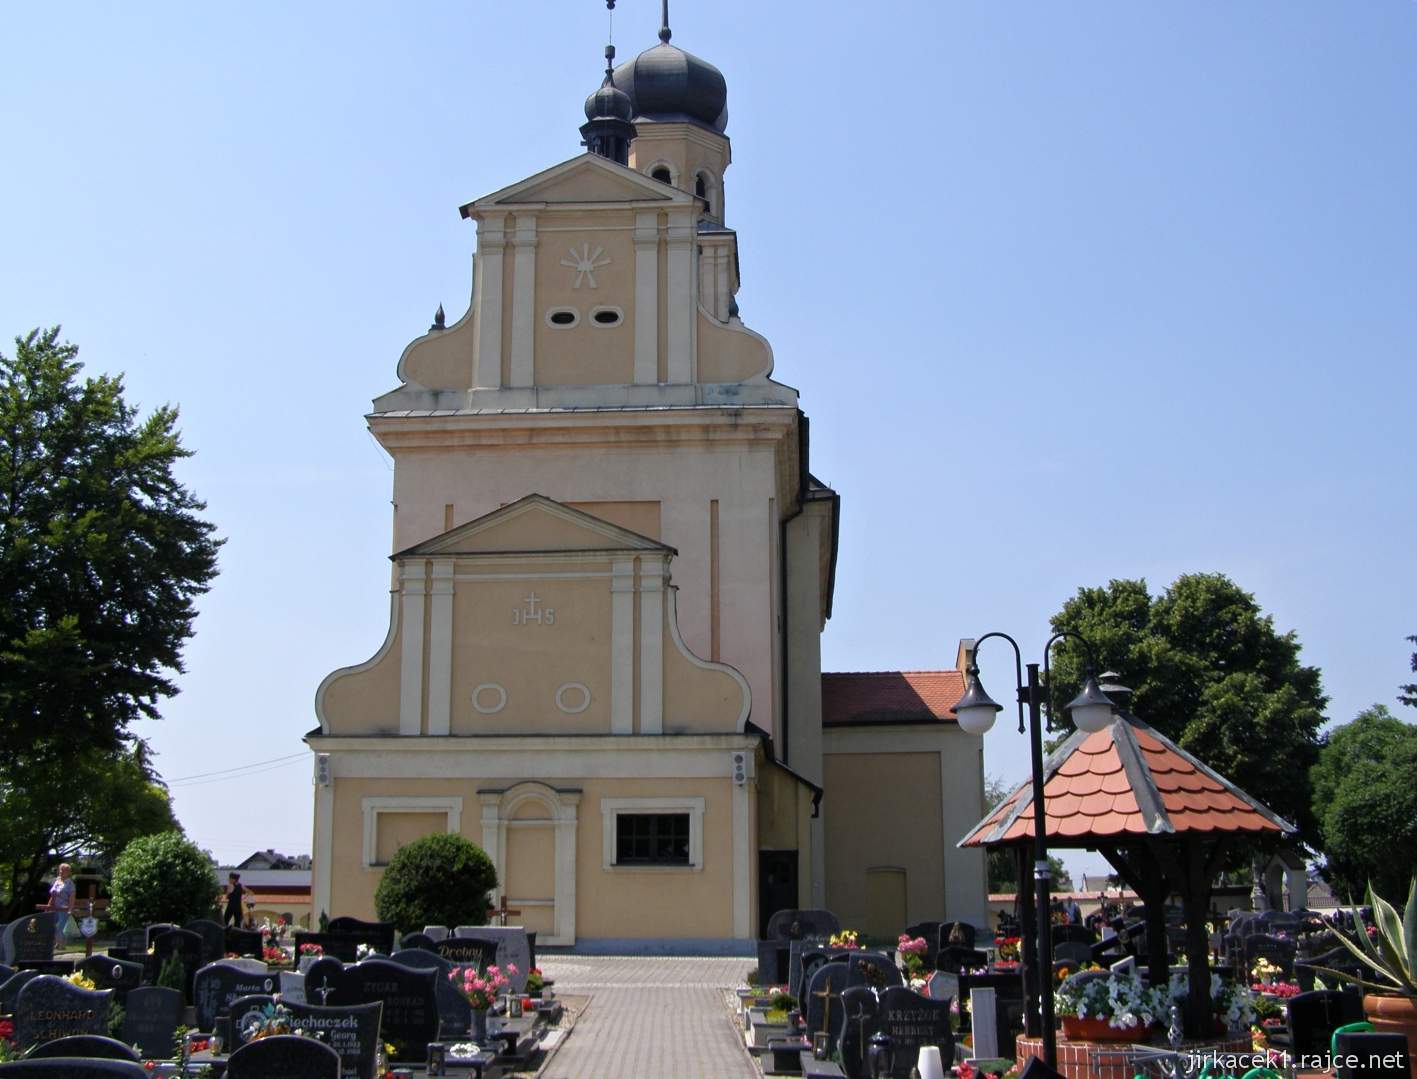 Tworków - kostel sv. Petra a Pavla (Kościół Św. Piotra i Pawła w Tworkowie) - presbytář